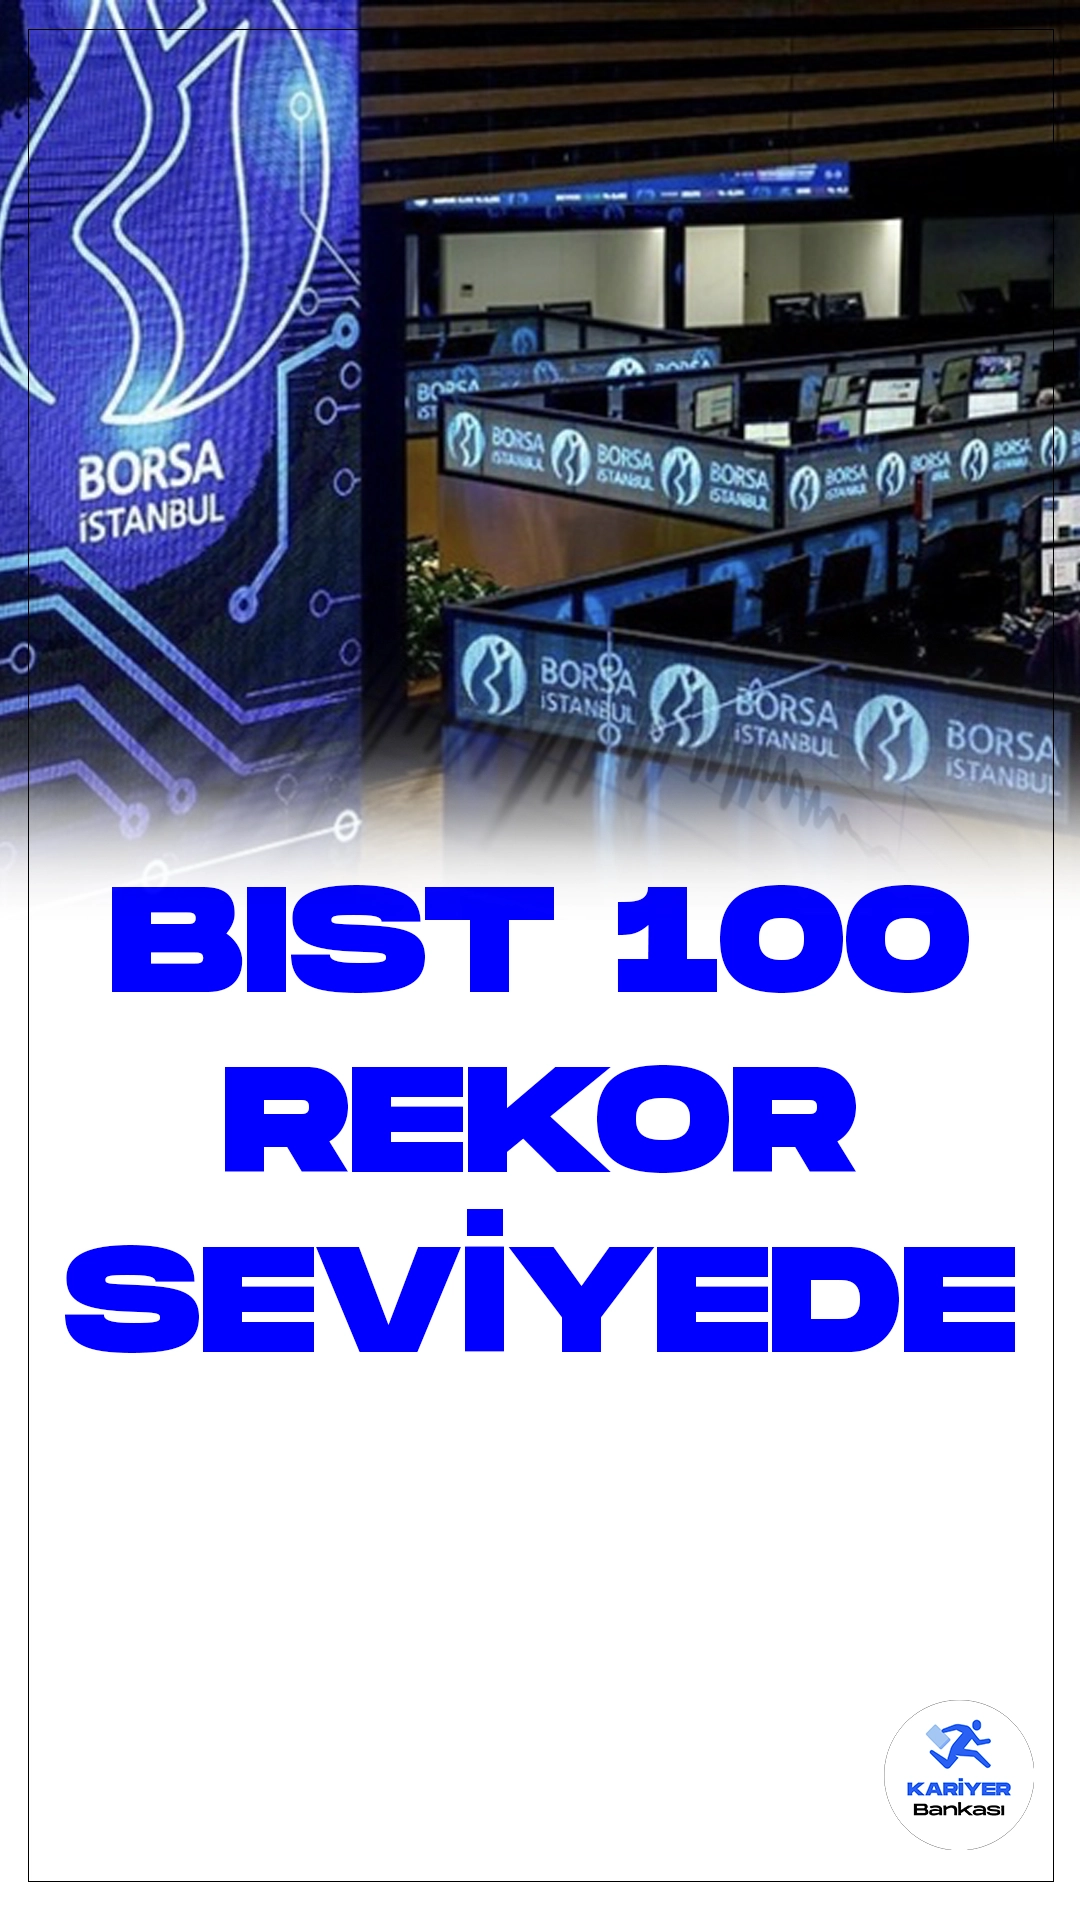 Borsa İstanbul'da BIST 100 Endeksi Rekor Seviyede.Borsa İstanbul'da BIST 100 endeksi, günün ilk yarısında 9.404,11 puanla rekor seviyeyi gördü. Sektör endeksleri arasında en fazla kazandıran ise %3,92 ile menkul kıymet yatırım ortaklığı oldu.